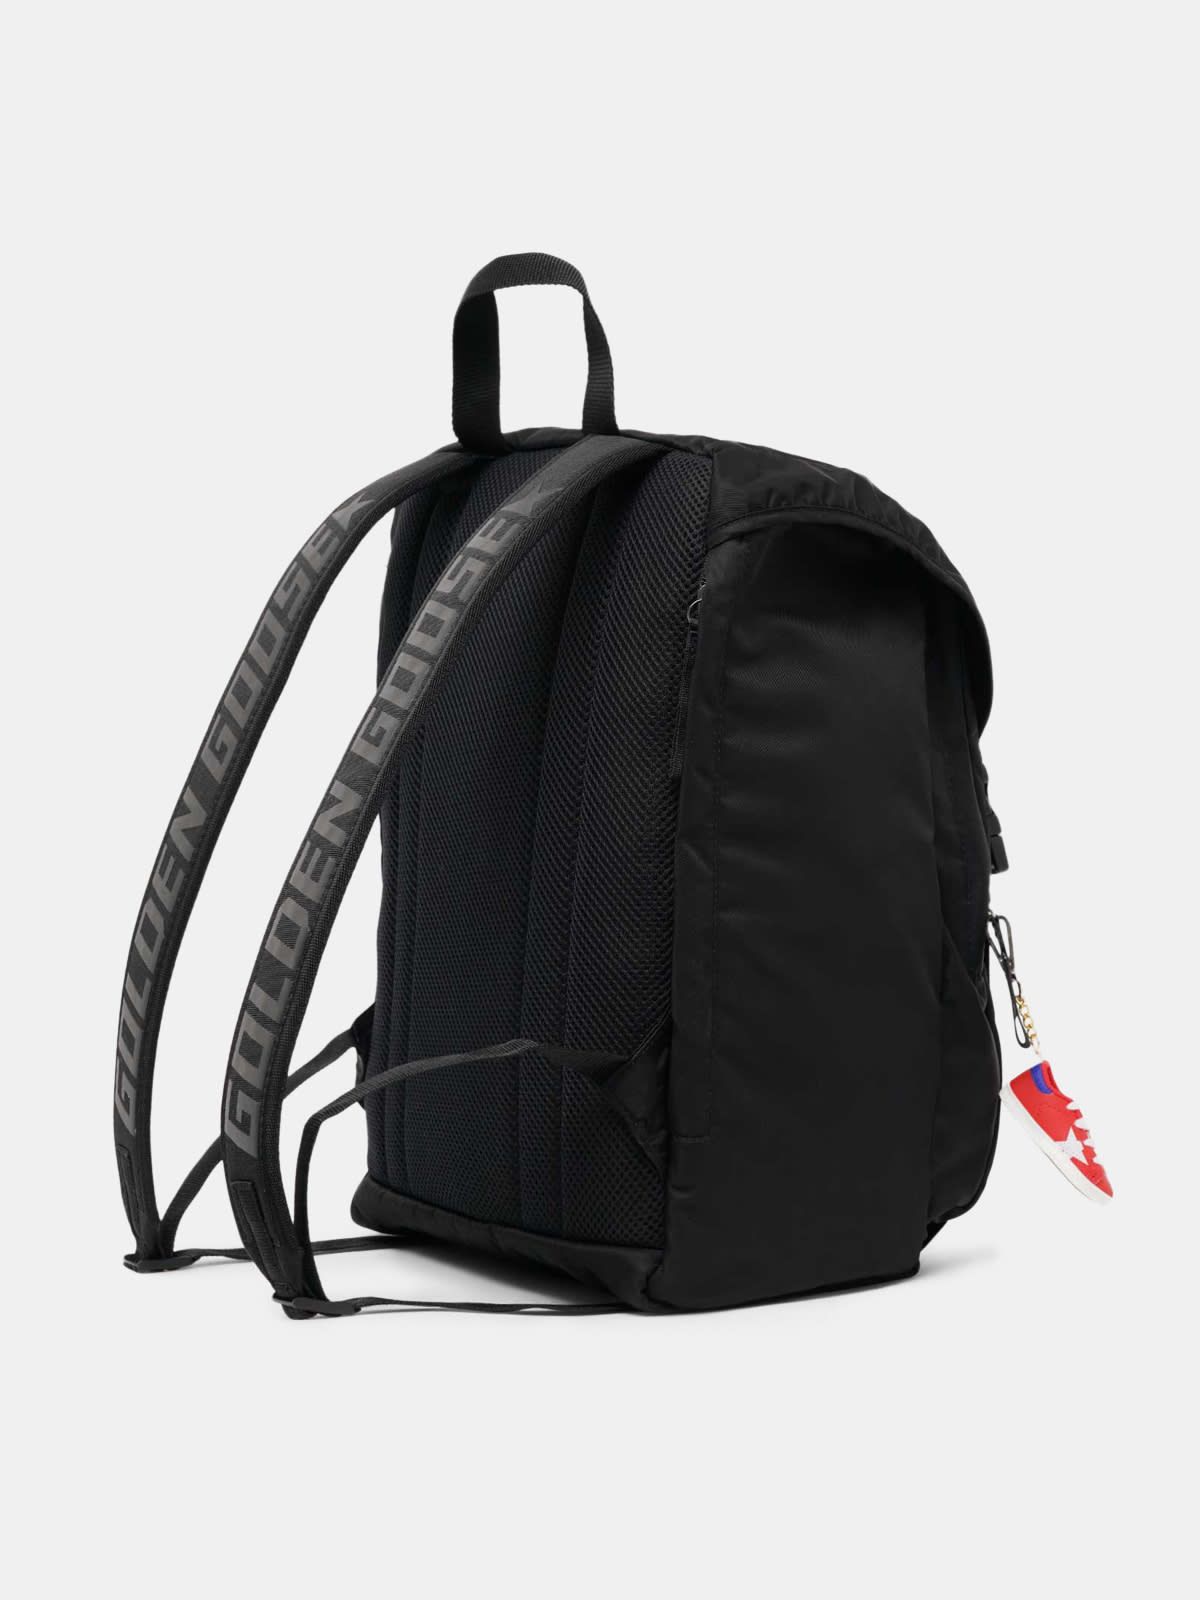 Black nylon Journey backpack